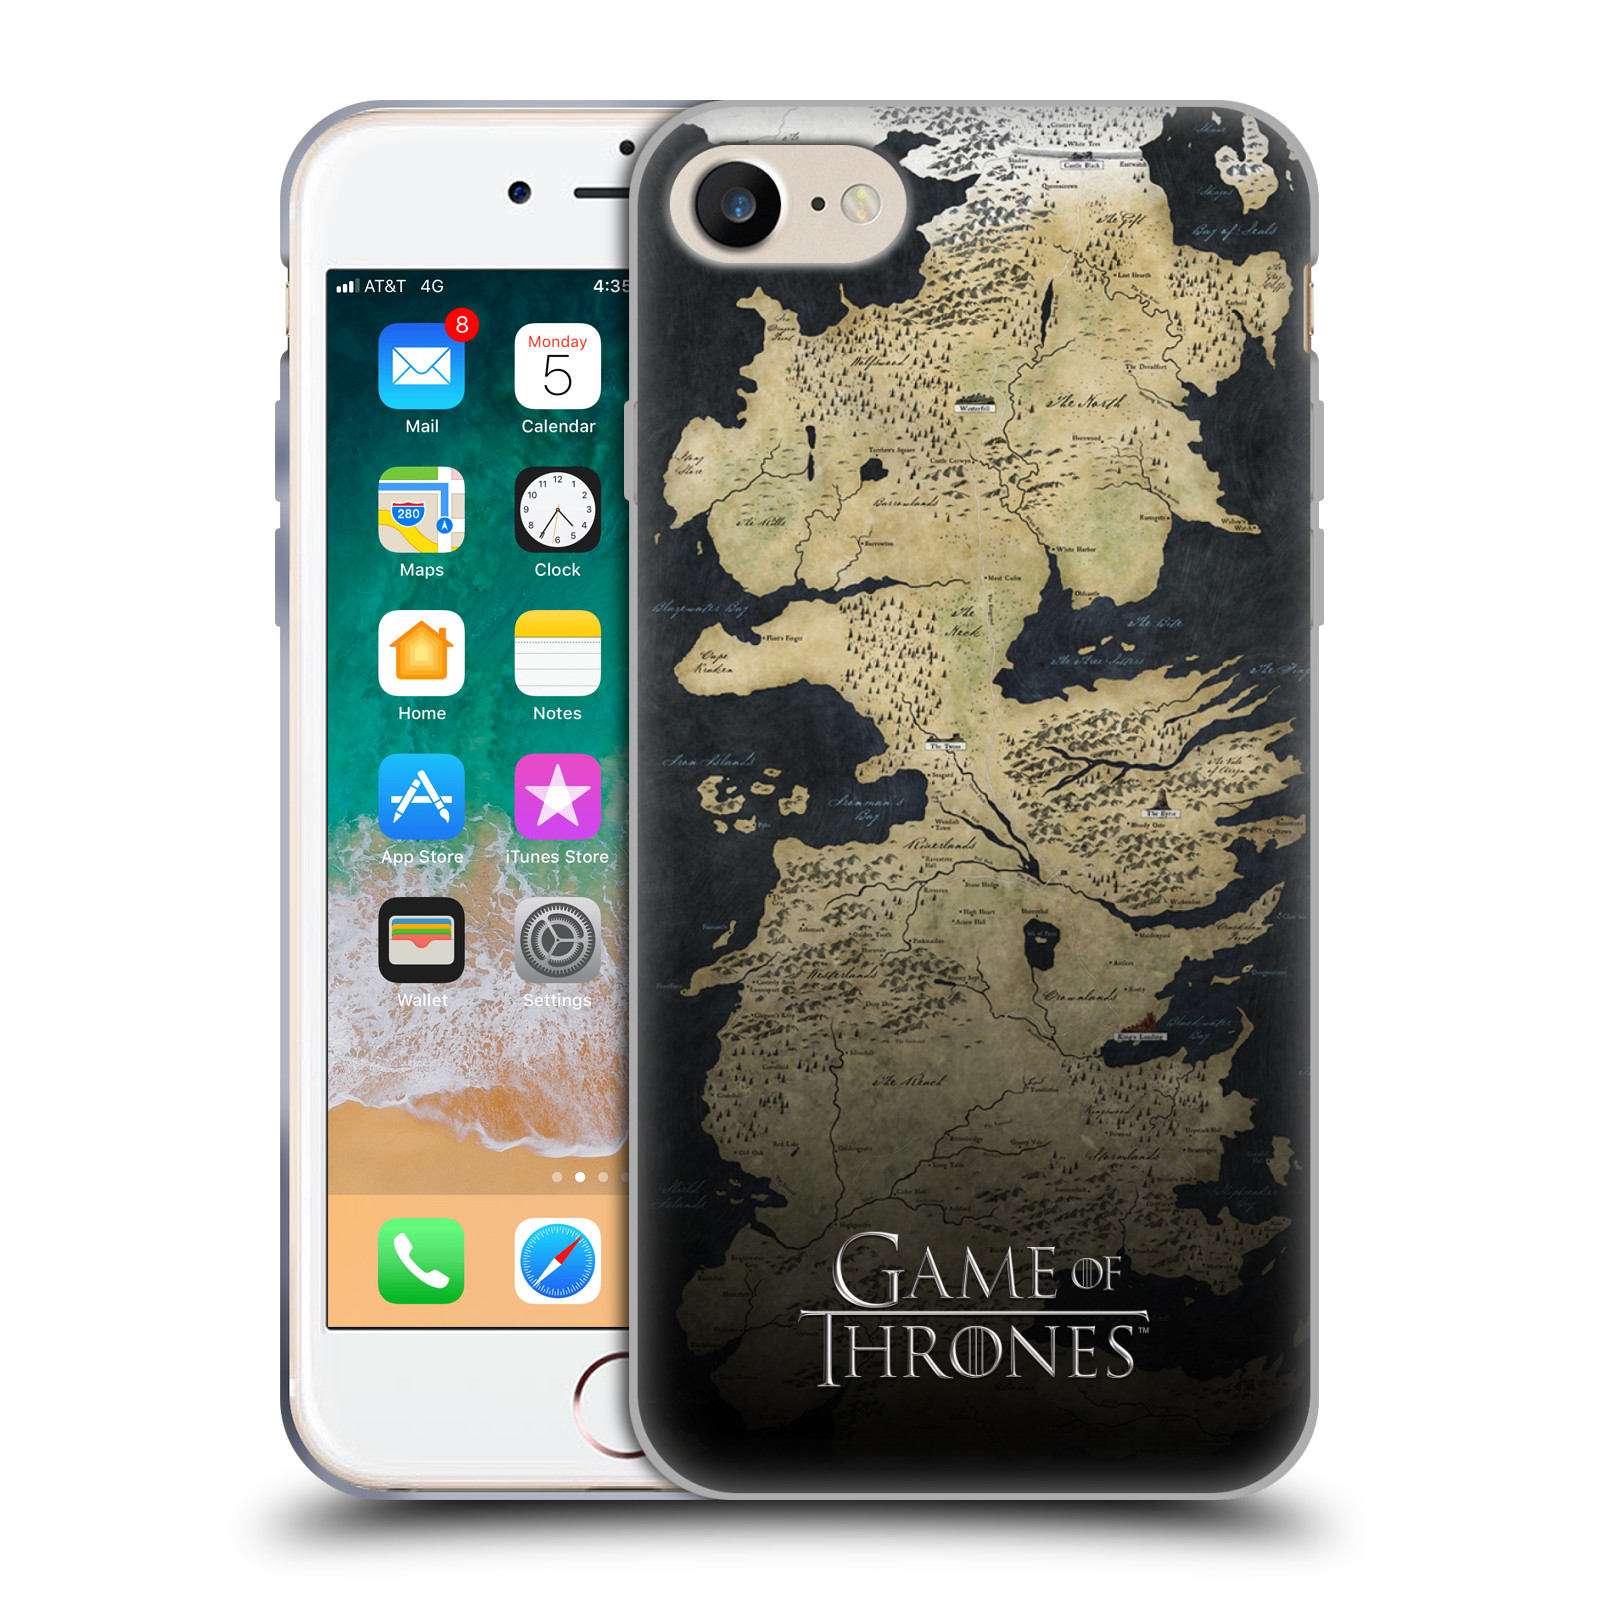 Silikonové pouzdro na mobil Apple iPhone 7 HEAD CASE Hra o trůny - Mapa západozemí (Silikonový kryt či obal na mobilní telefon s licencovaným motivem Hra o trůny / Game Of Thrones pro Apple iPhone 7)